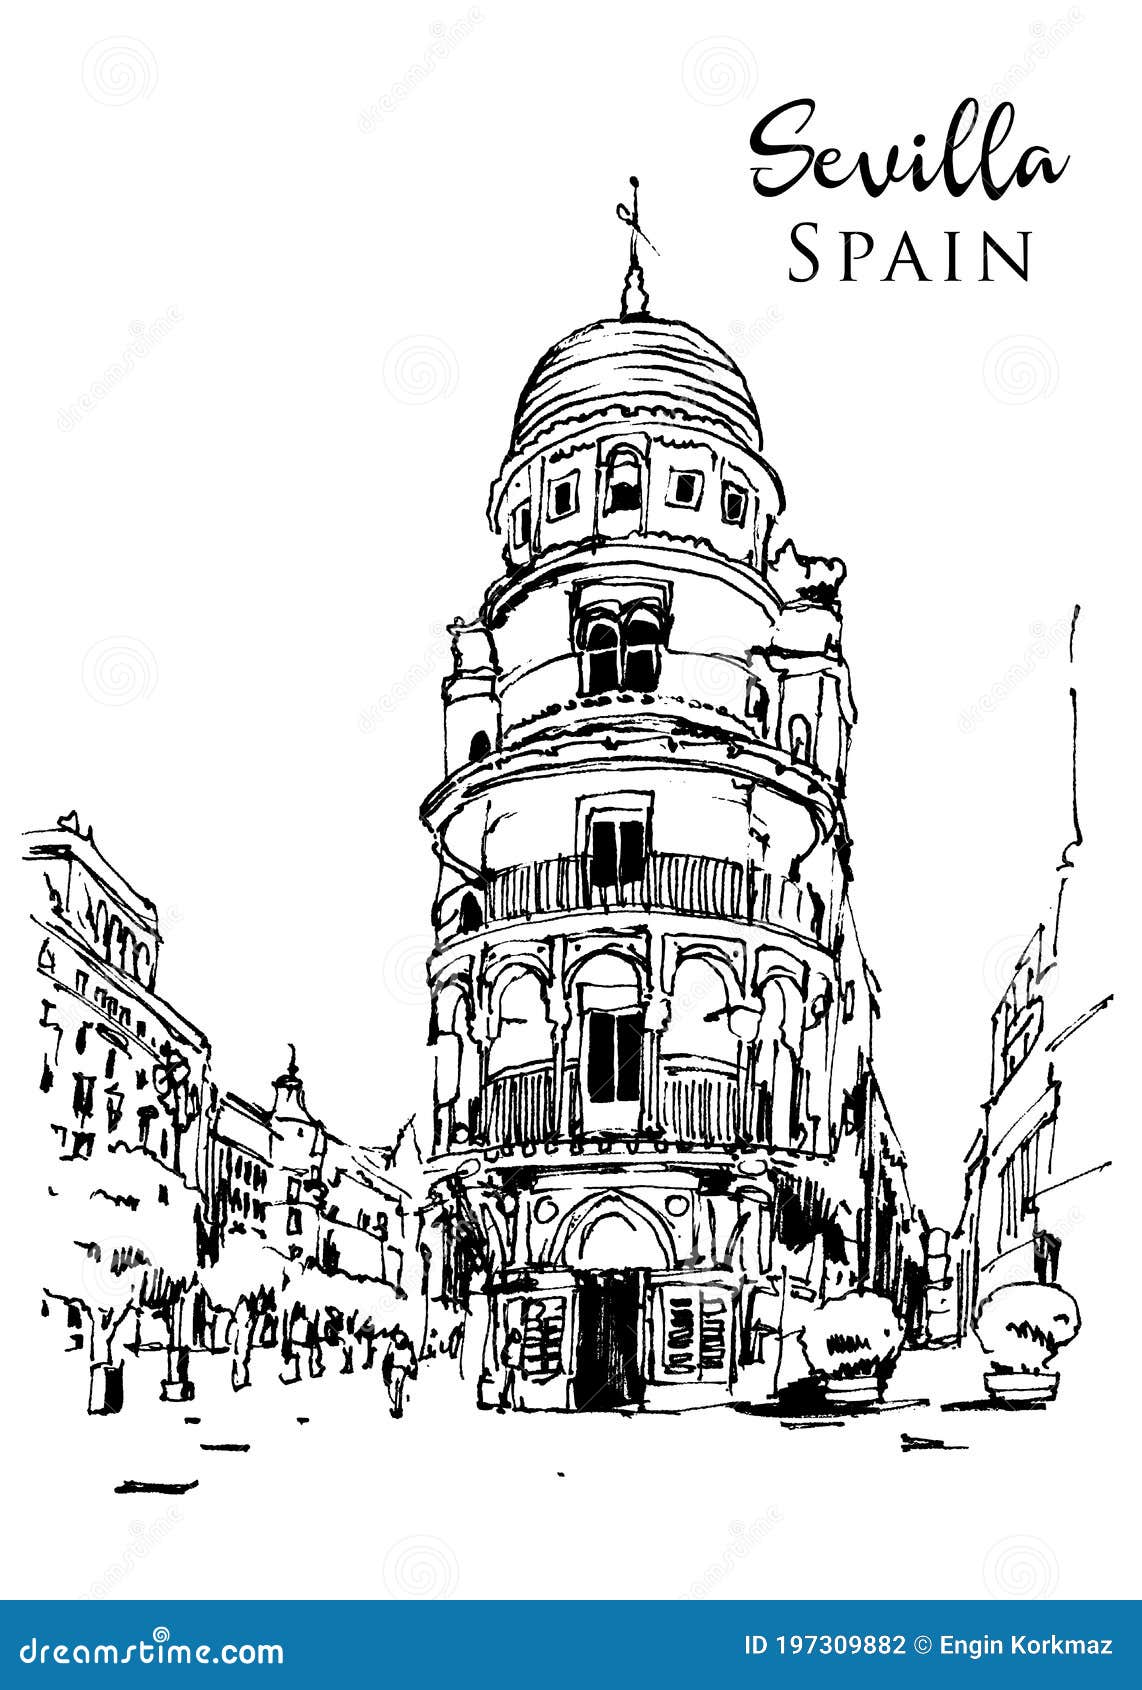 drawing sketch  of edifico la adriatica in sevilla, spain